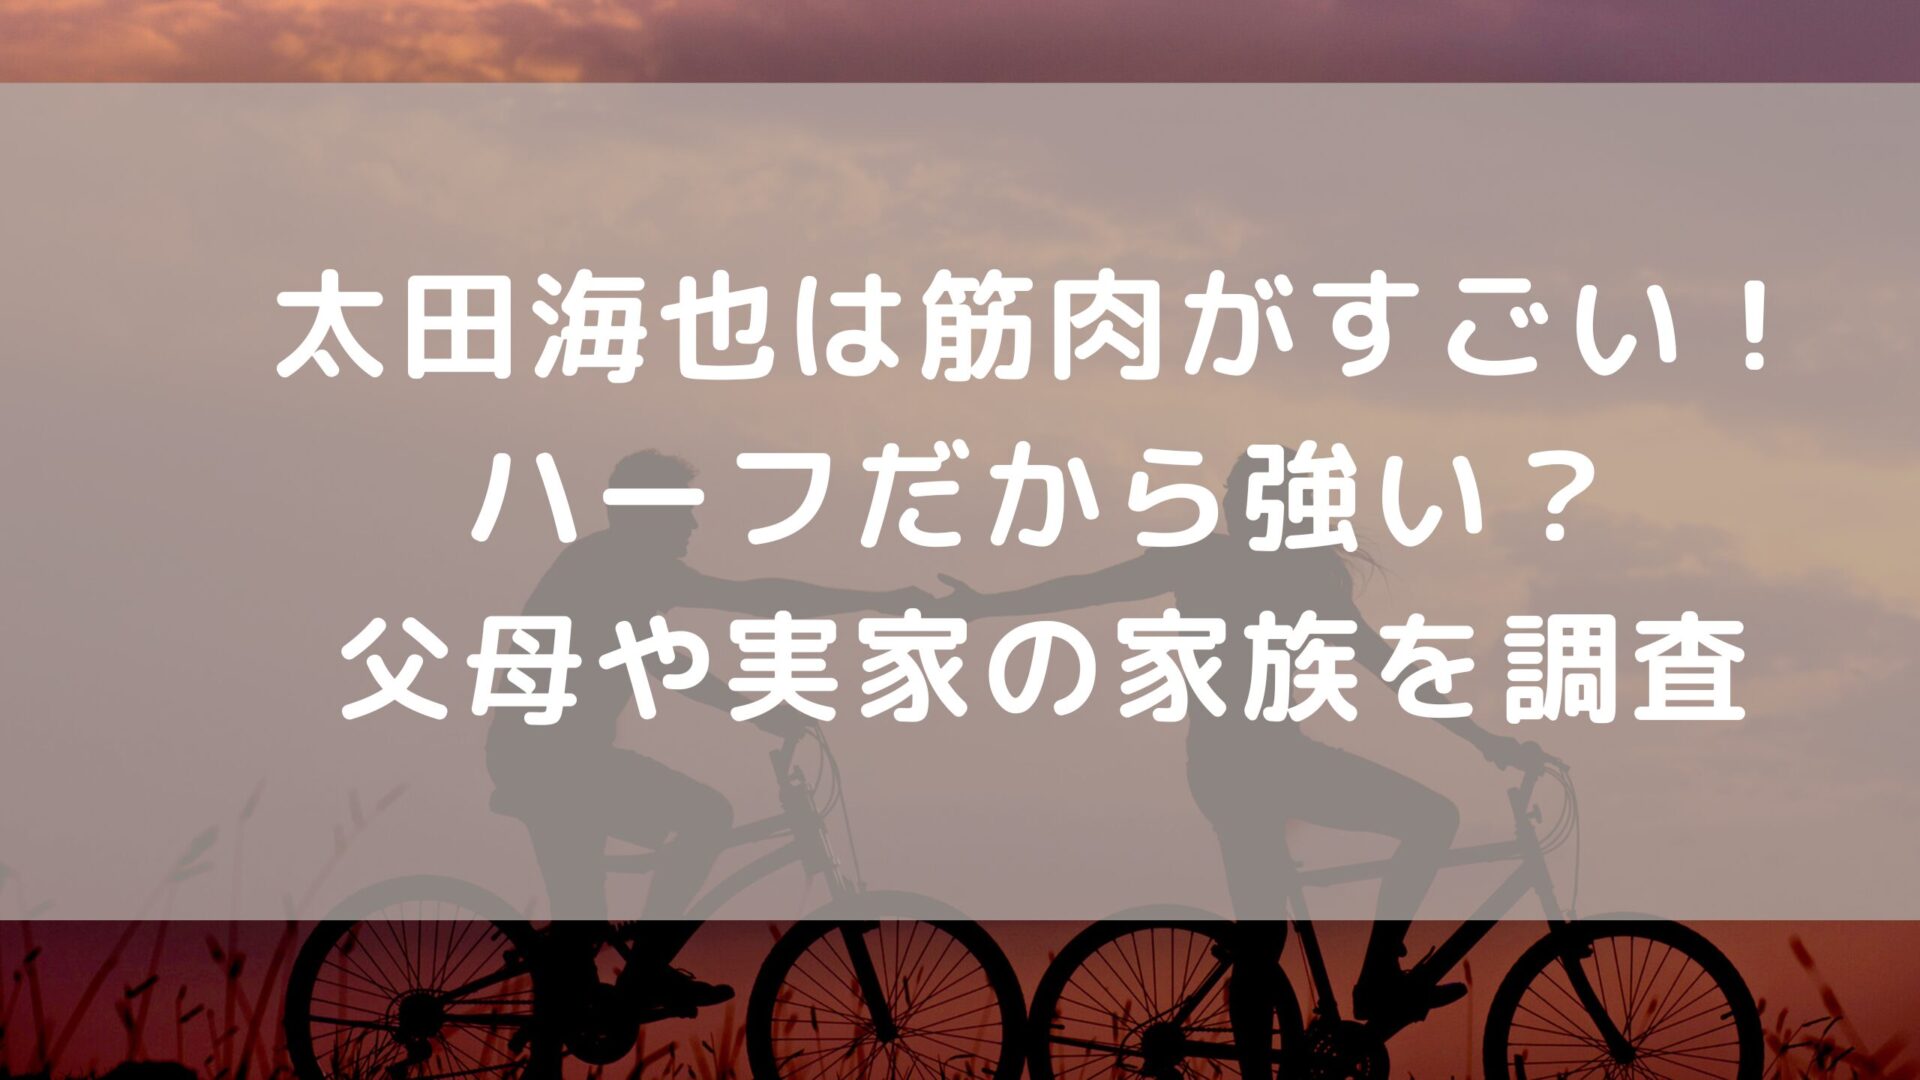 太田海也選手に関してのタイトルと二人自転車をこぐ夕方でのシルエット画像の背景